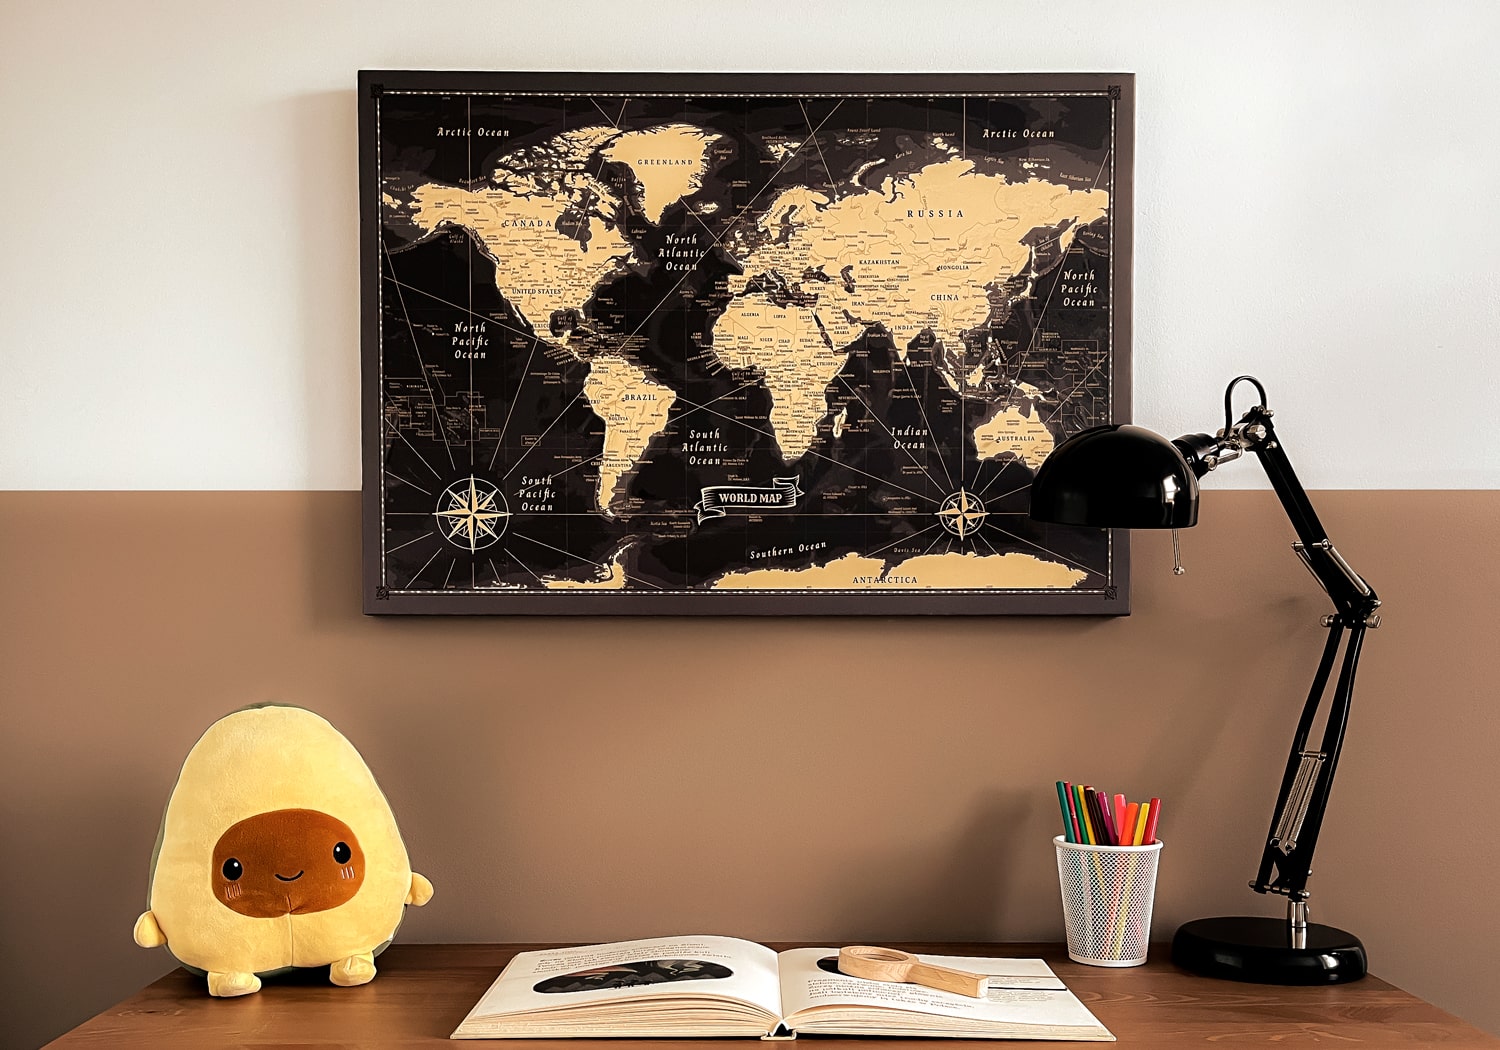 Dekoracyjna tablica korkowa mapa świata do wbijania pinezek, na płótnie, edukacyjna, wisząca na ścianie w dziecięcym pokoju.